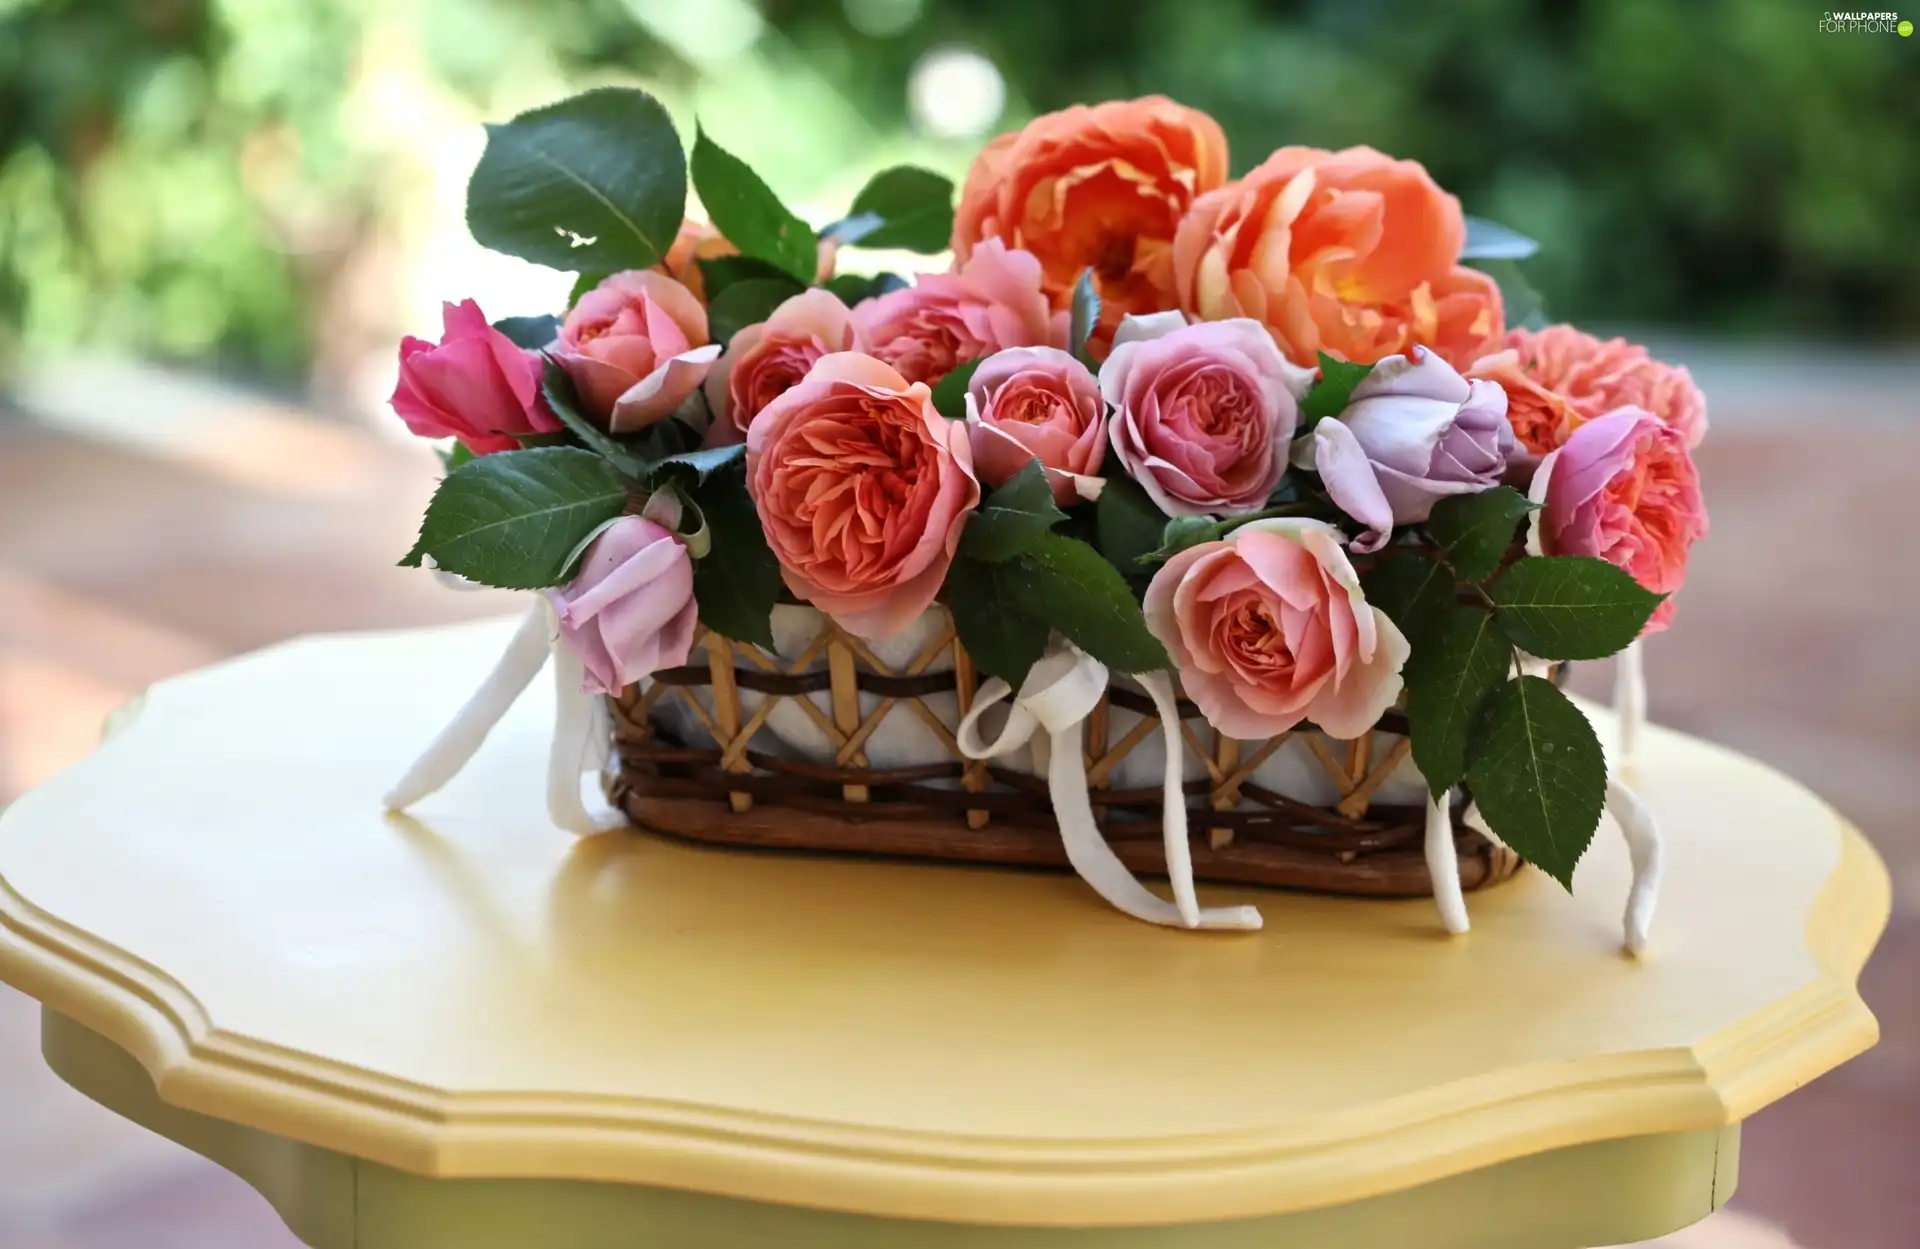 bouquet, basket, Table, flowers